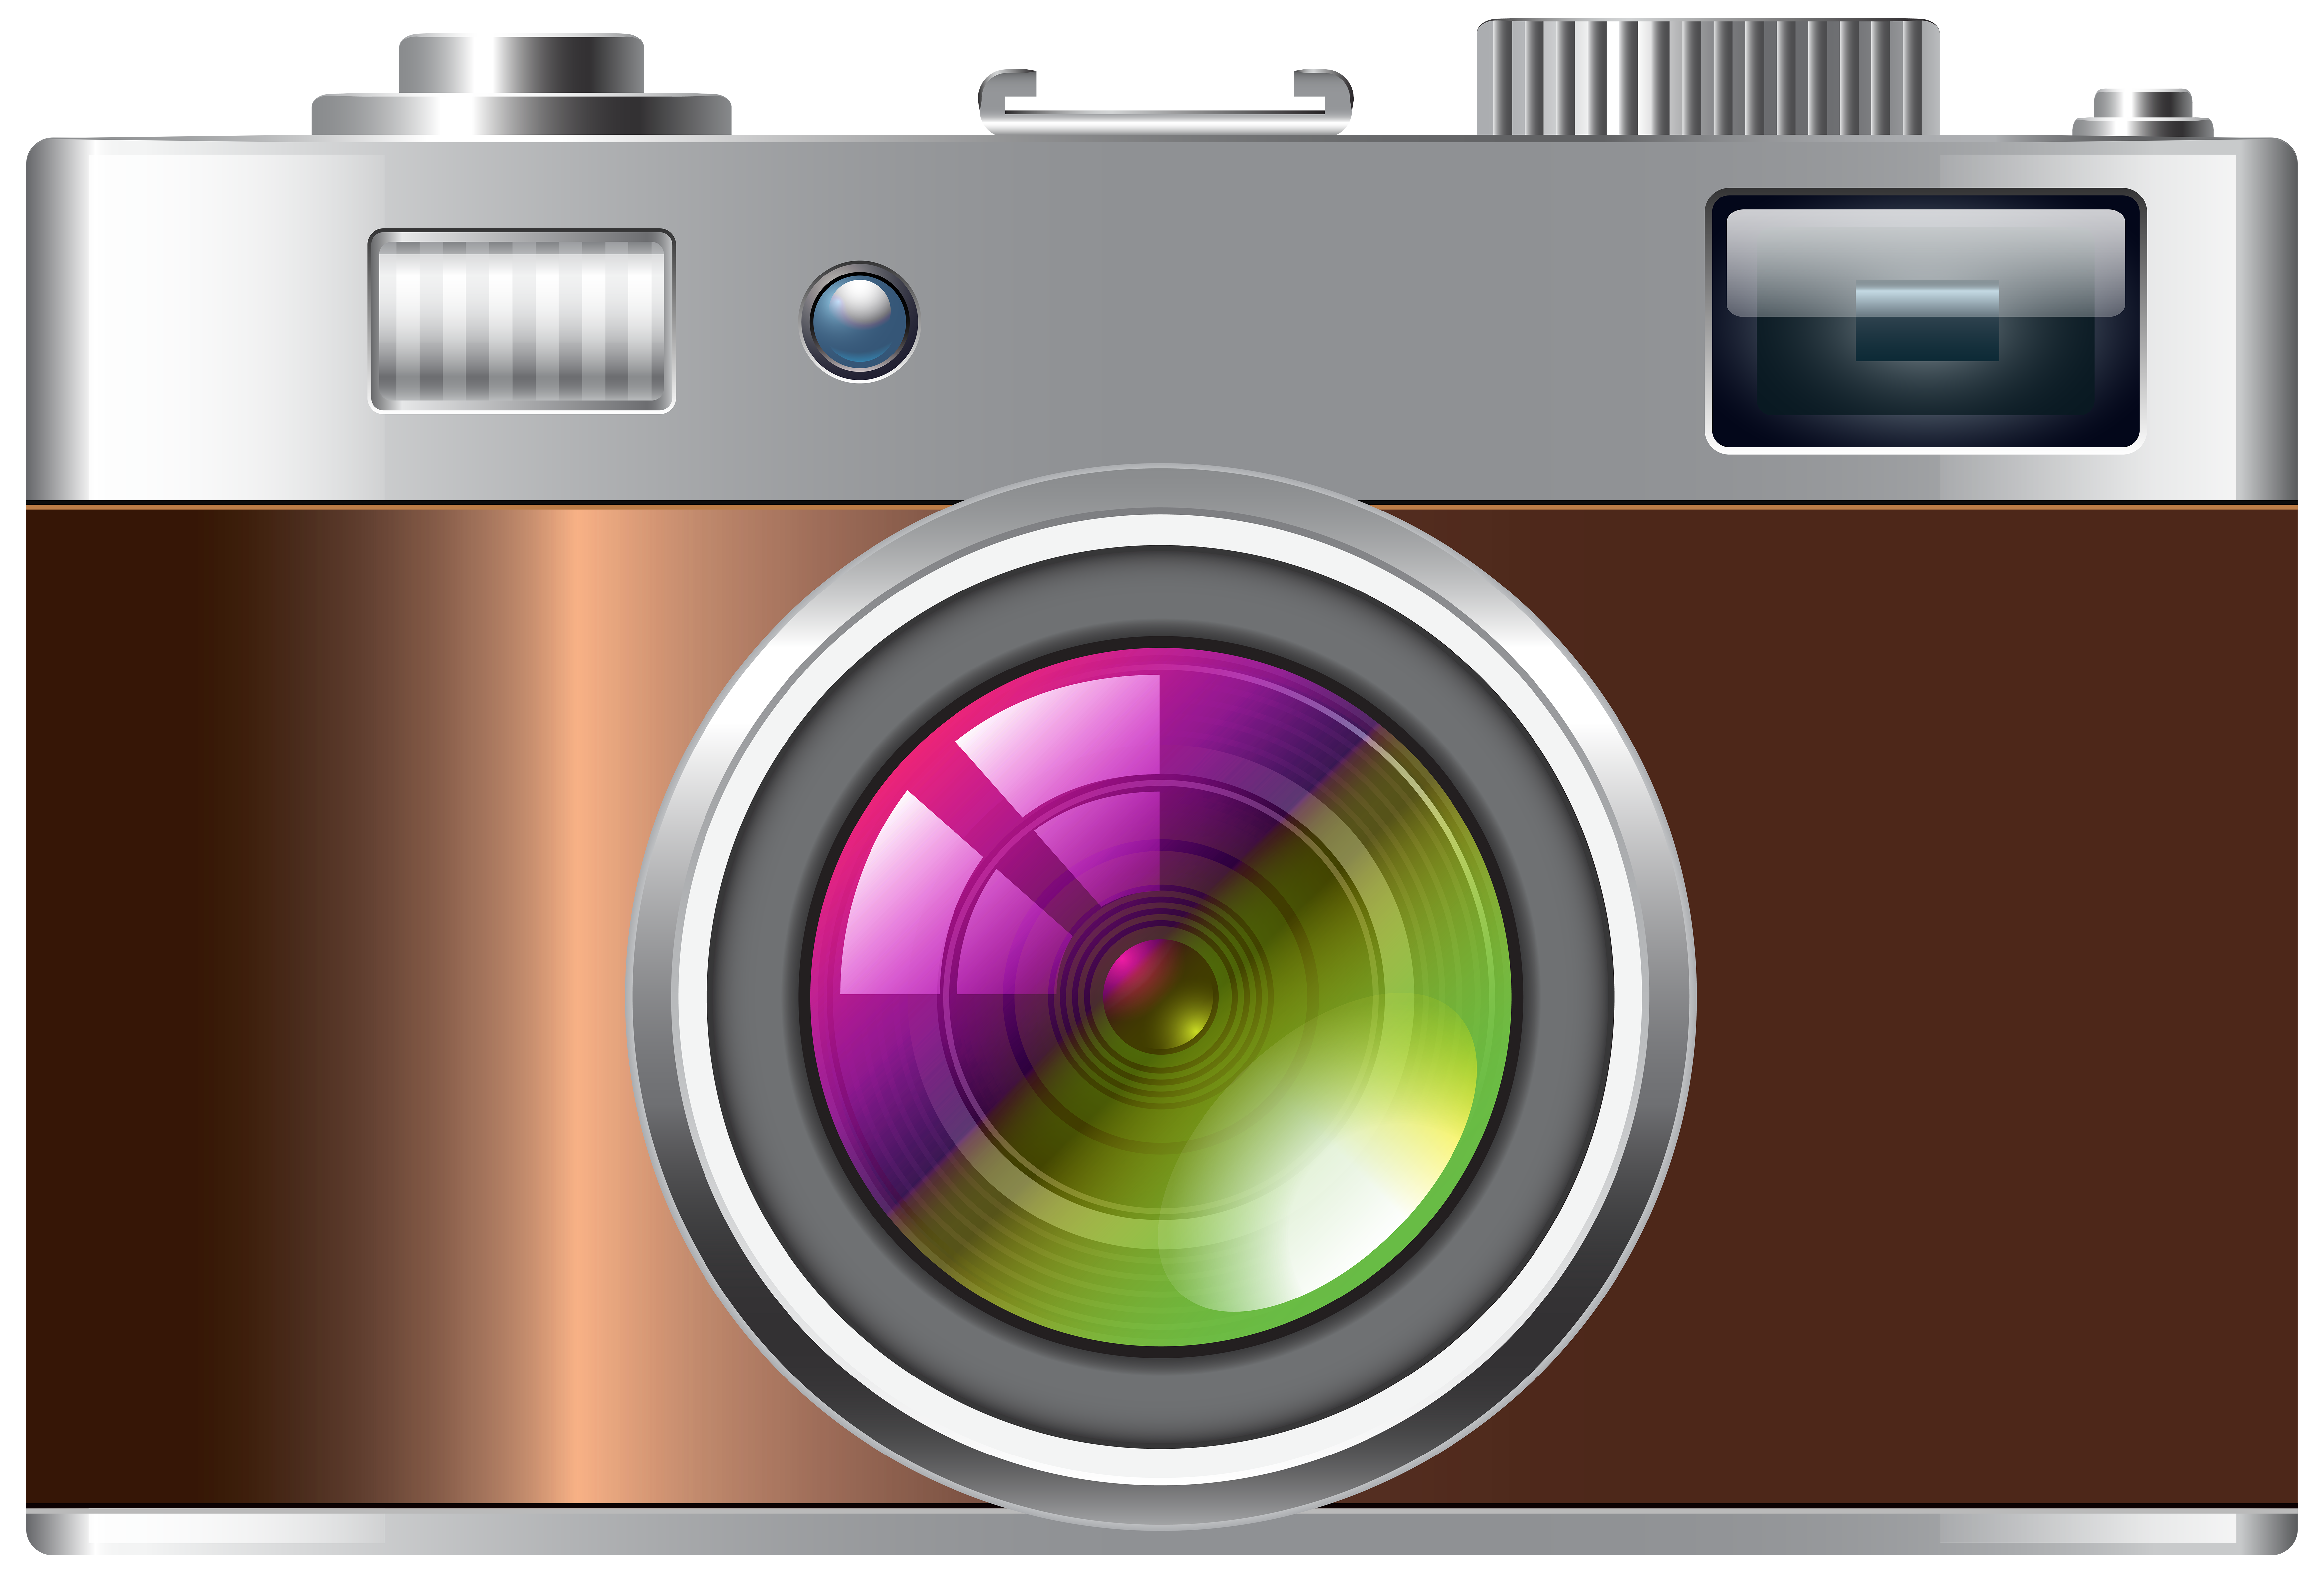 Camera Clip art - Camera PNG Transparent Clip Art Image png download